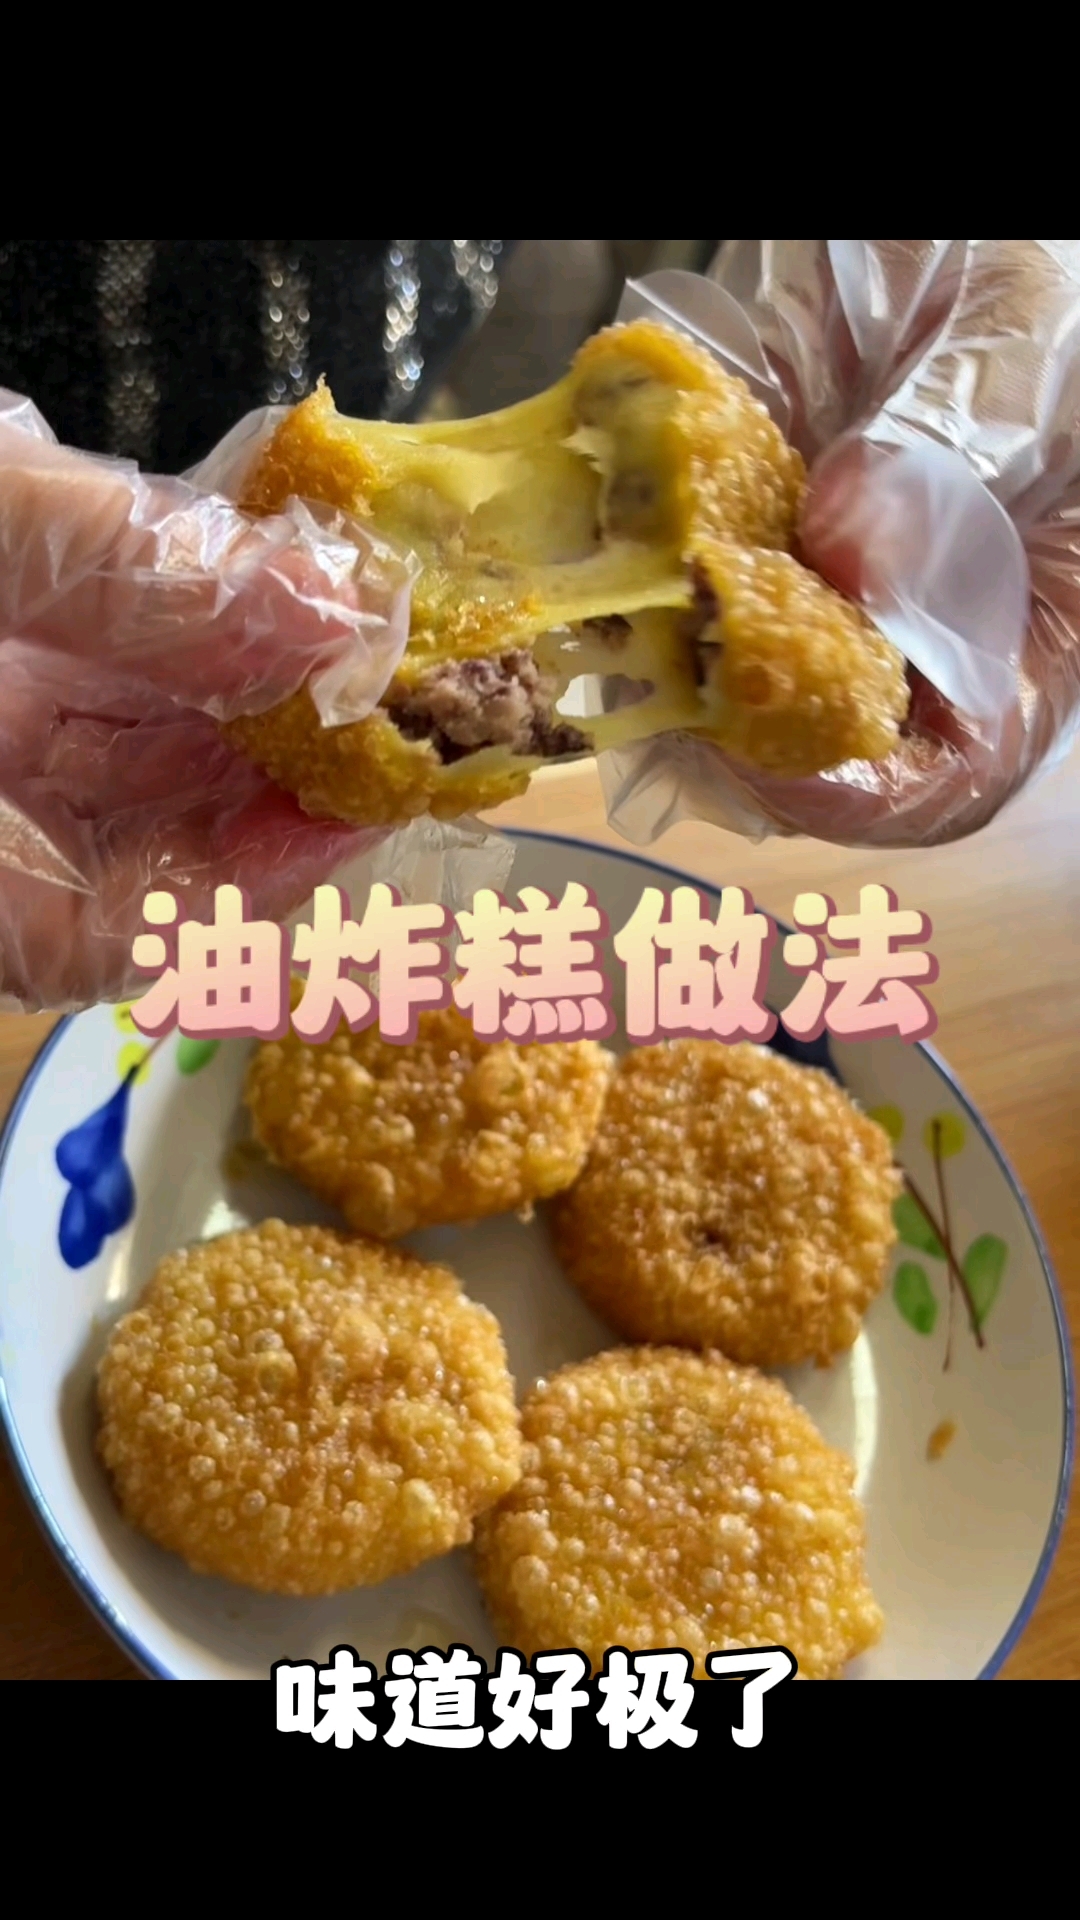 大黄米油炸糕(年糕)食用烹制方法